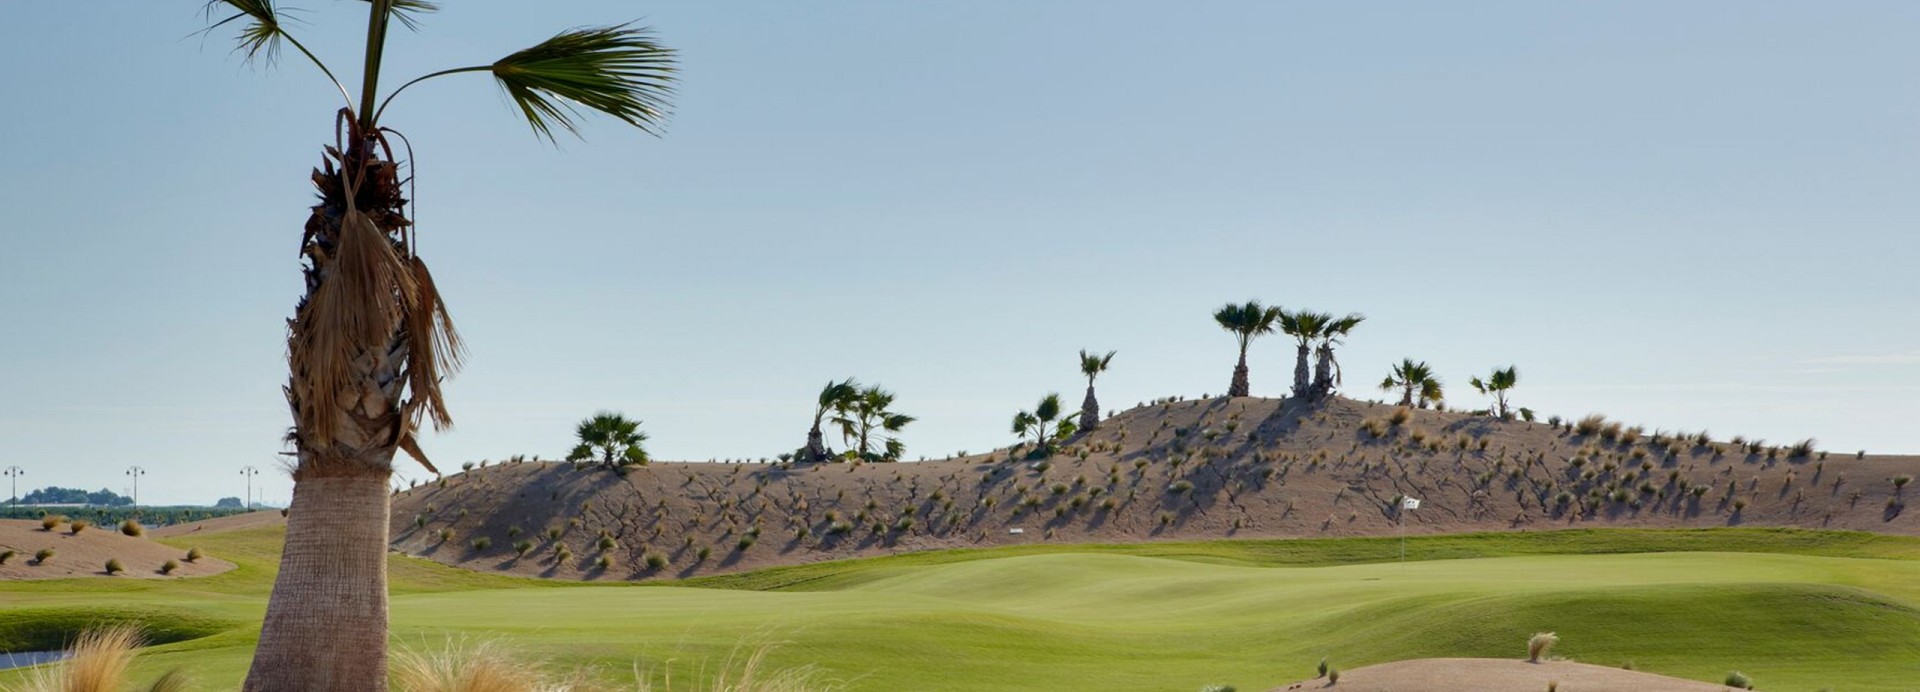 Saurines Golf Ugolf Exclusive  | Golfové zájezdy, golfová dovolená, luxusní golf